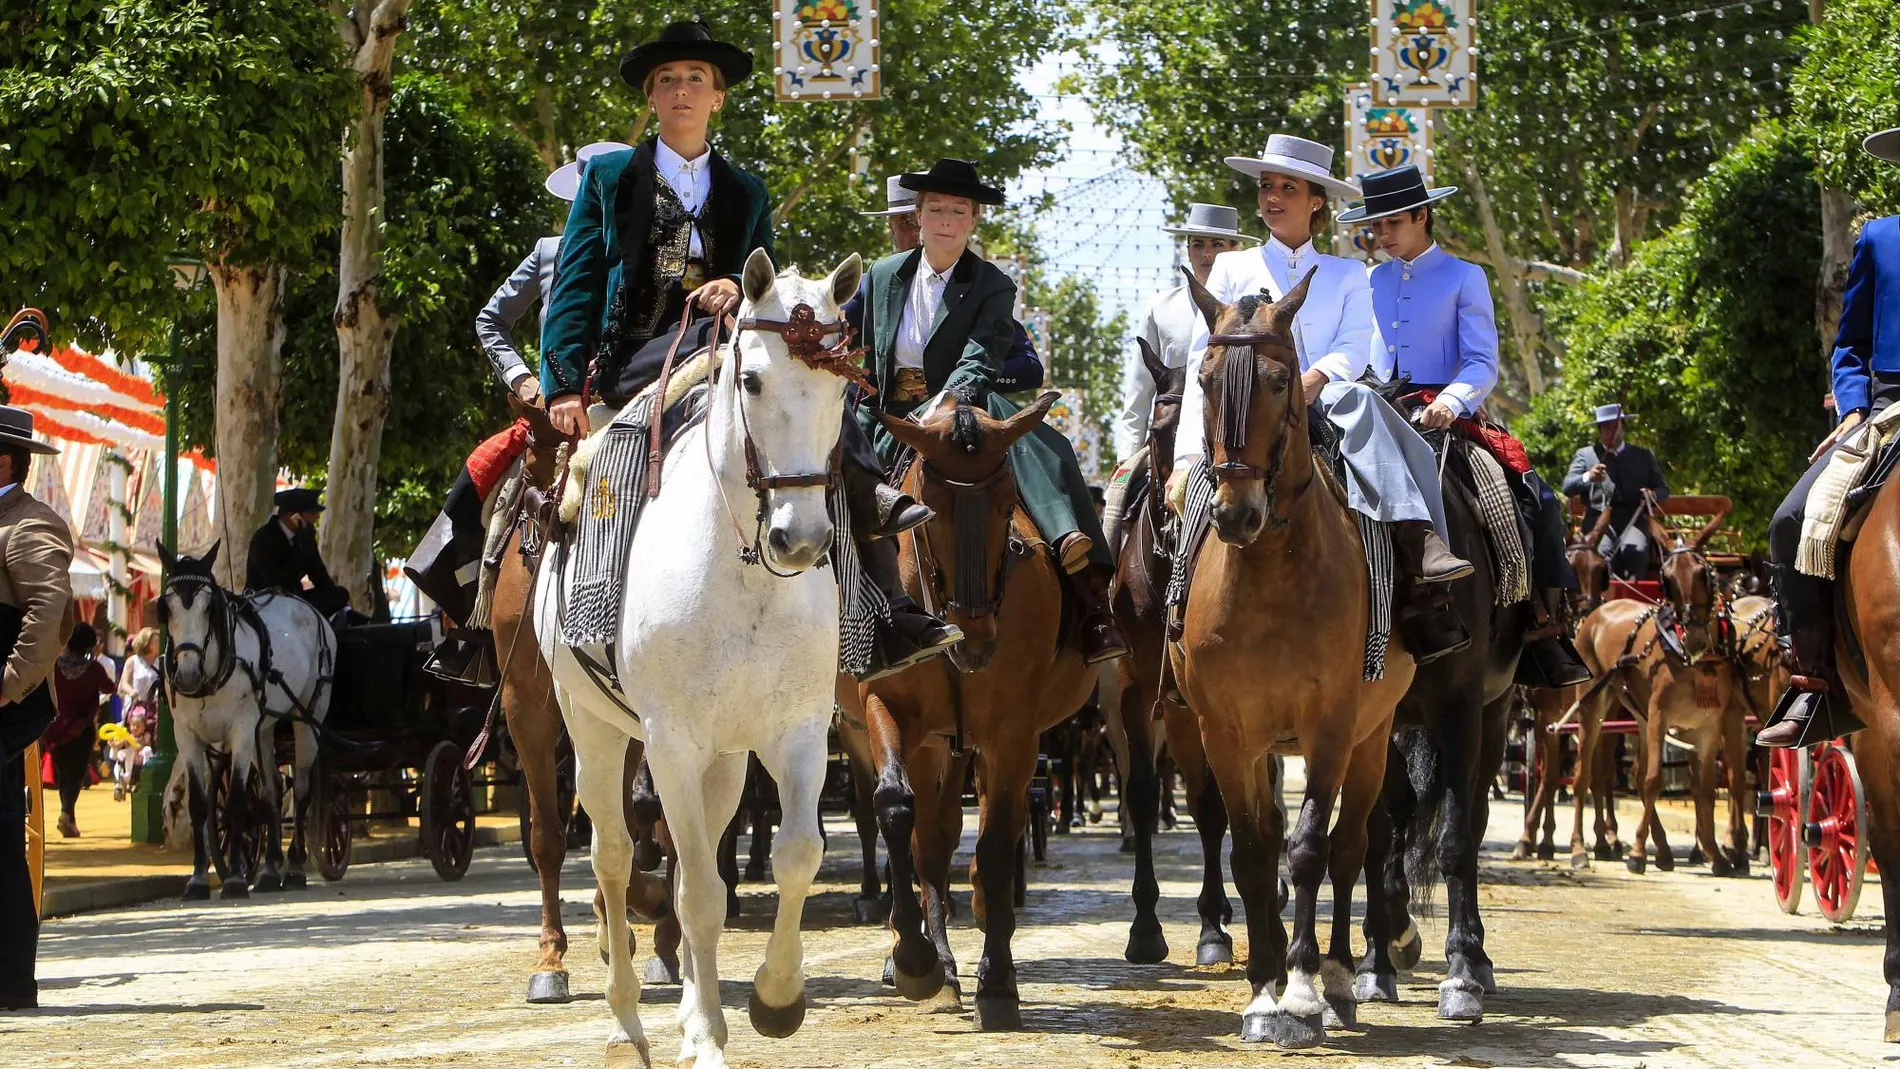 El festivo local abarrota la Feria de Sevilla en vísperas de la campaña electoral